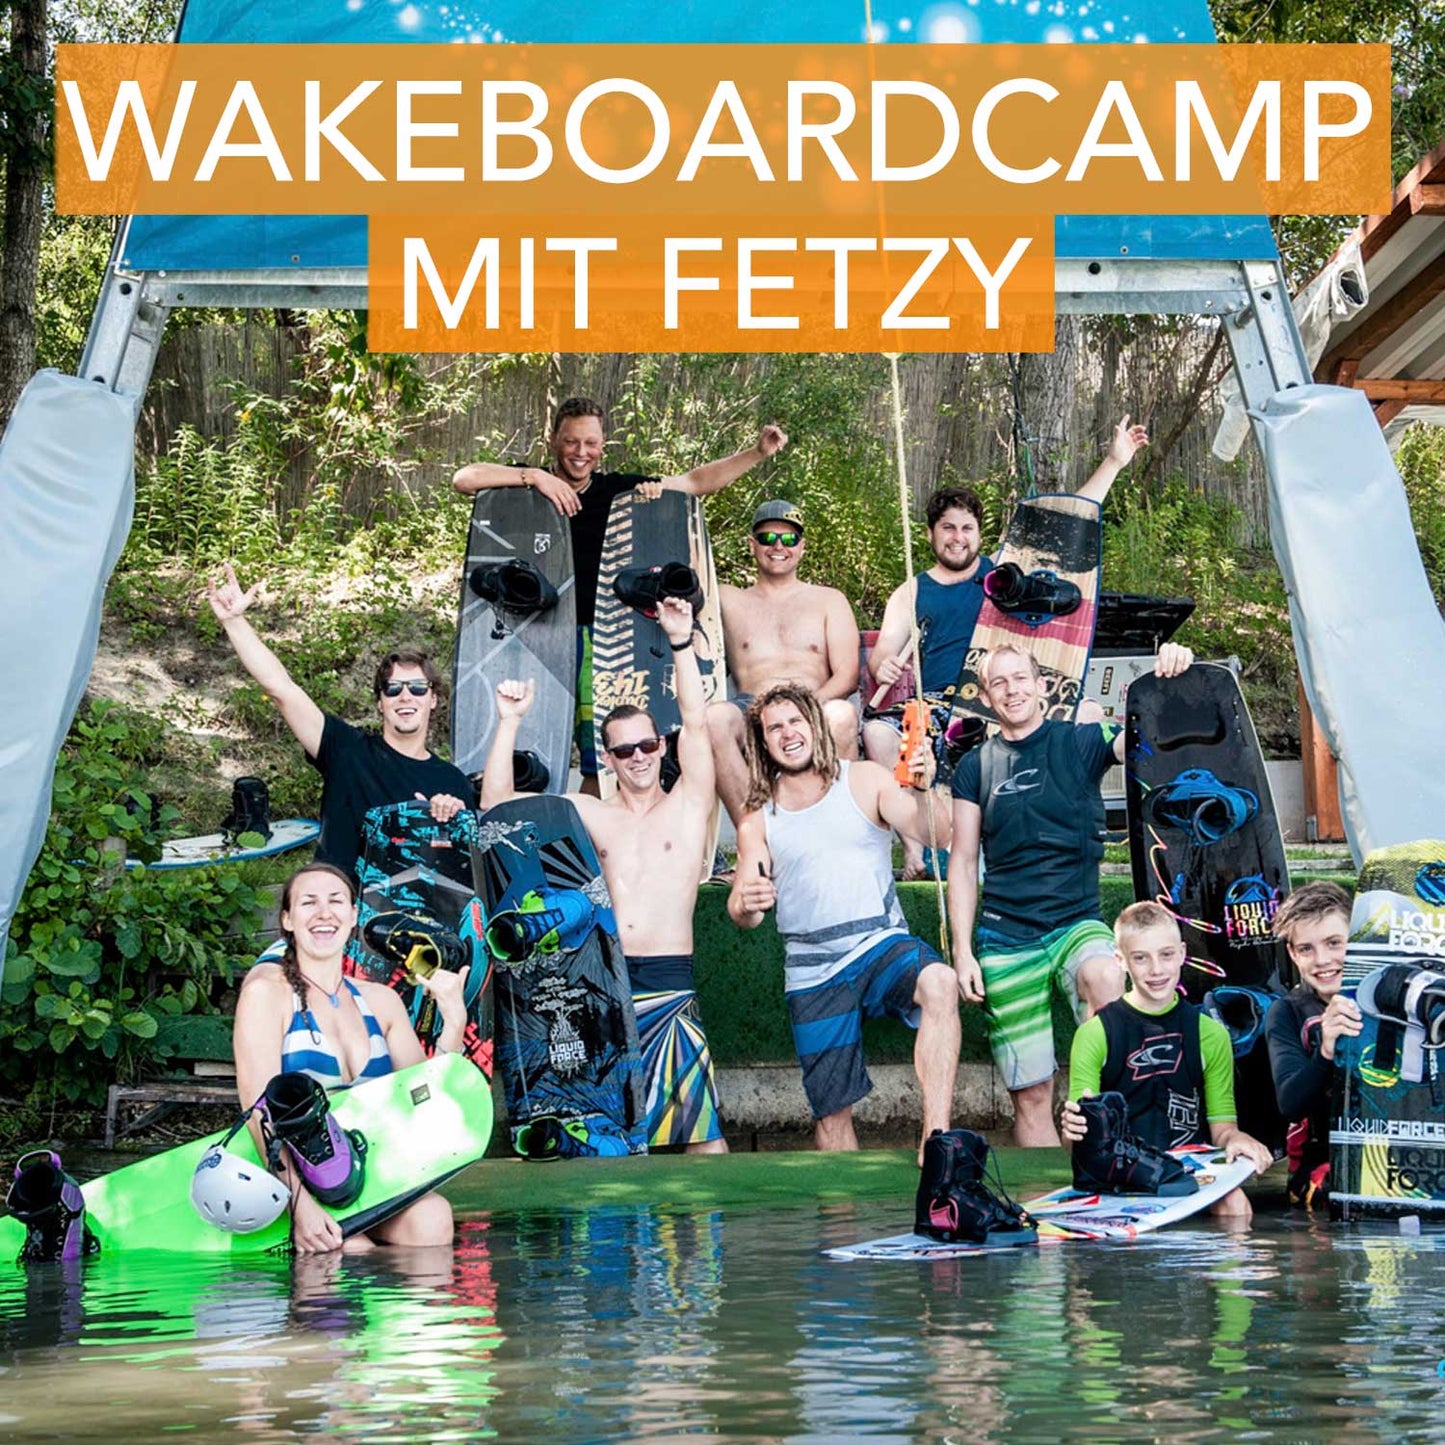 Wakeboardcamp mit Fetzy 19.-21.7 (Ausgebucht)